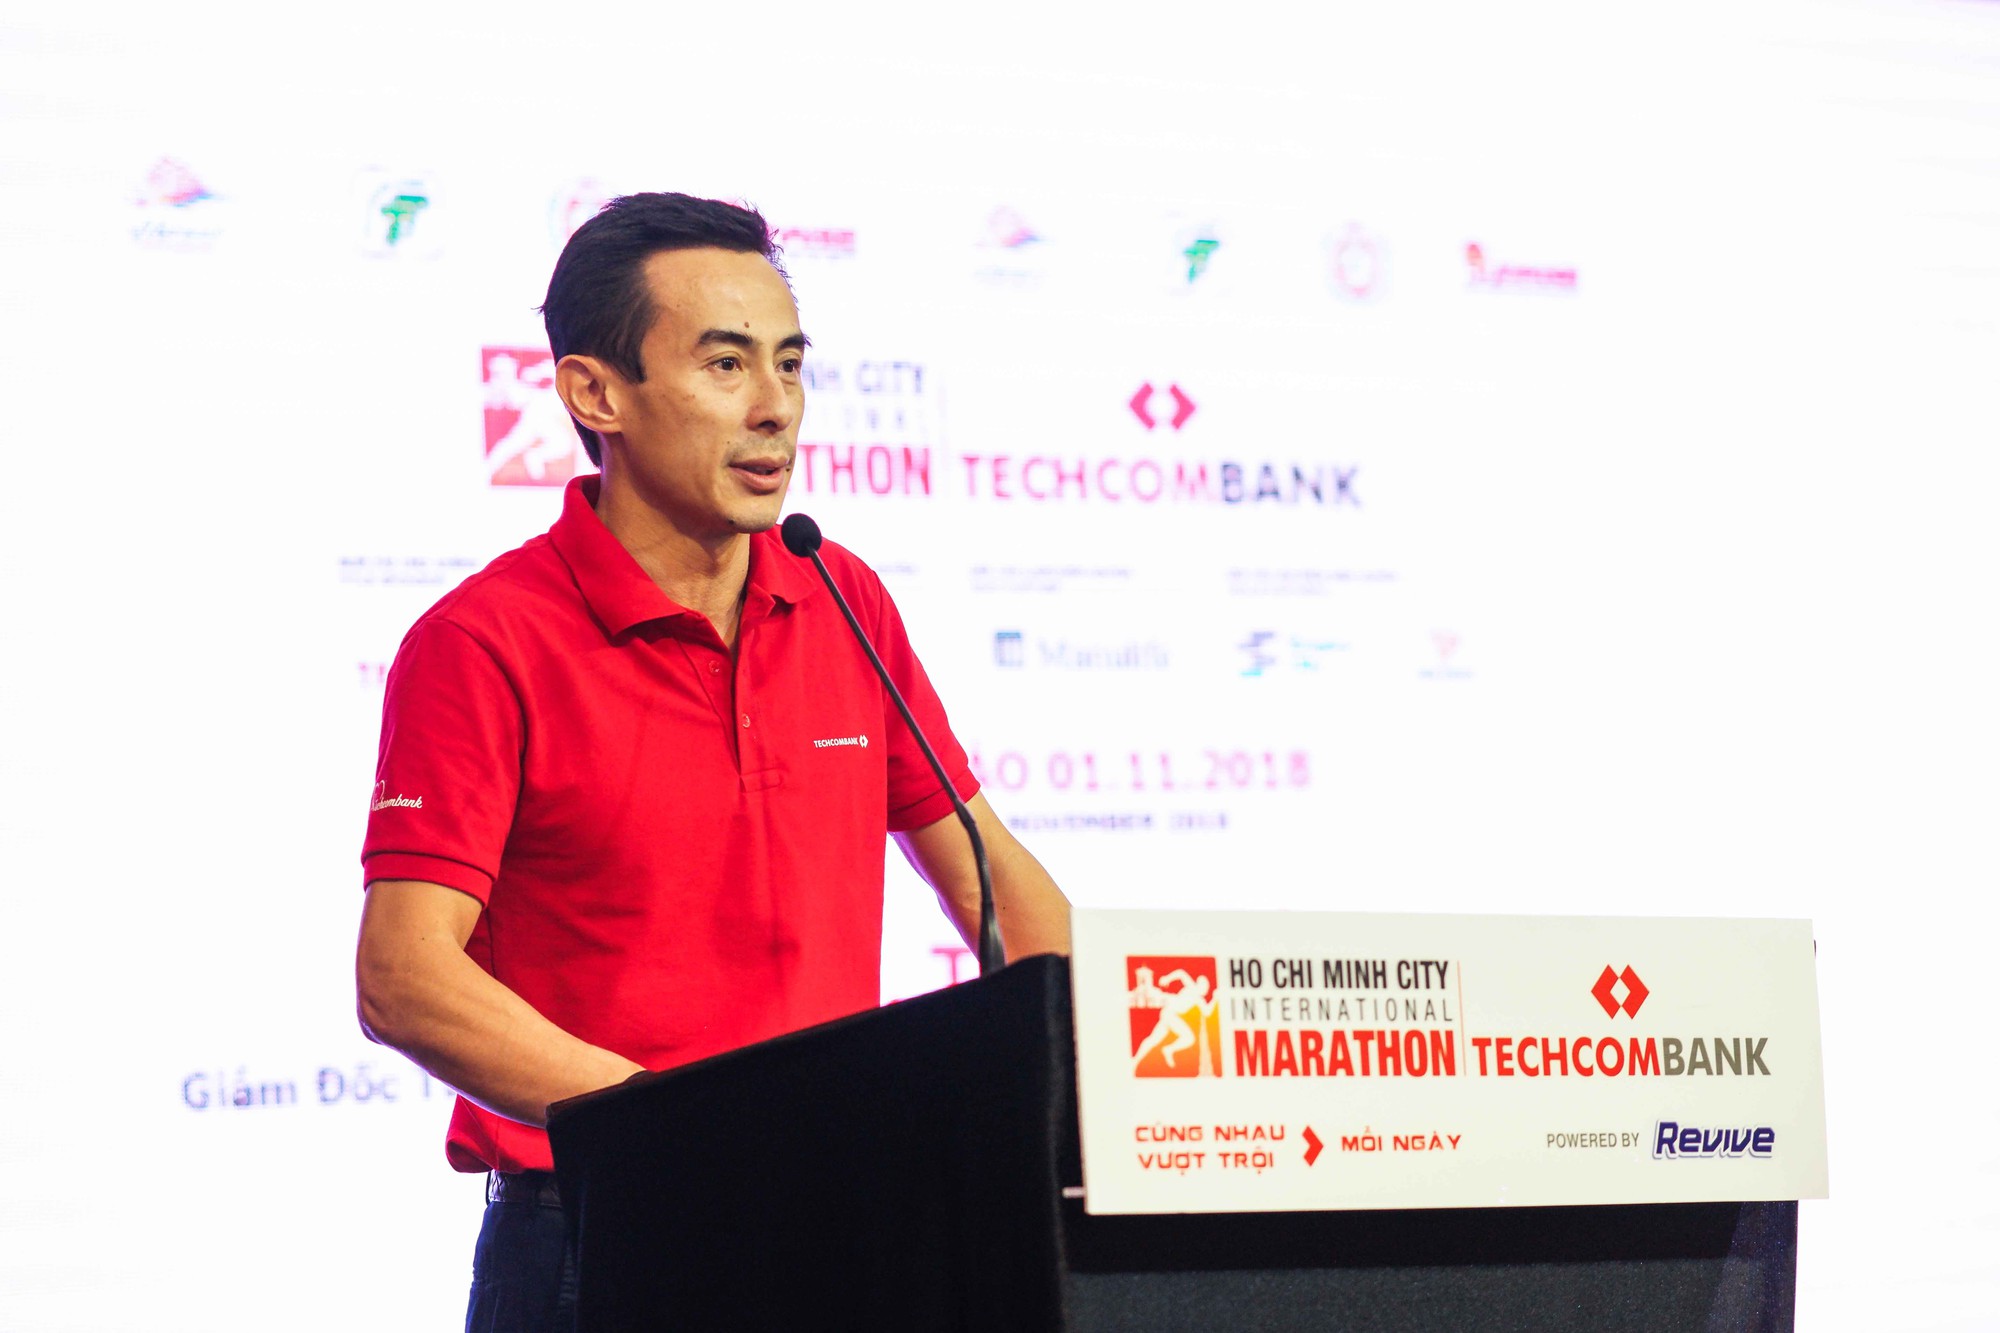 Đường chạy Techcombank HCMC International Marathon 2018 sẽ đi qua Dinh Độc Lập - Ảnh 5.